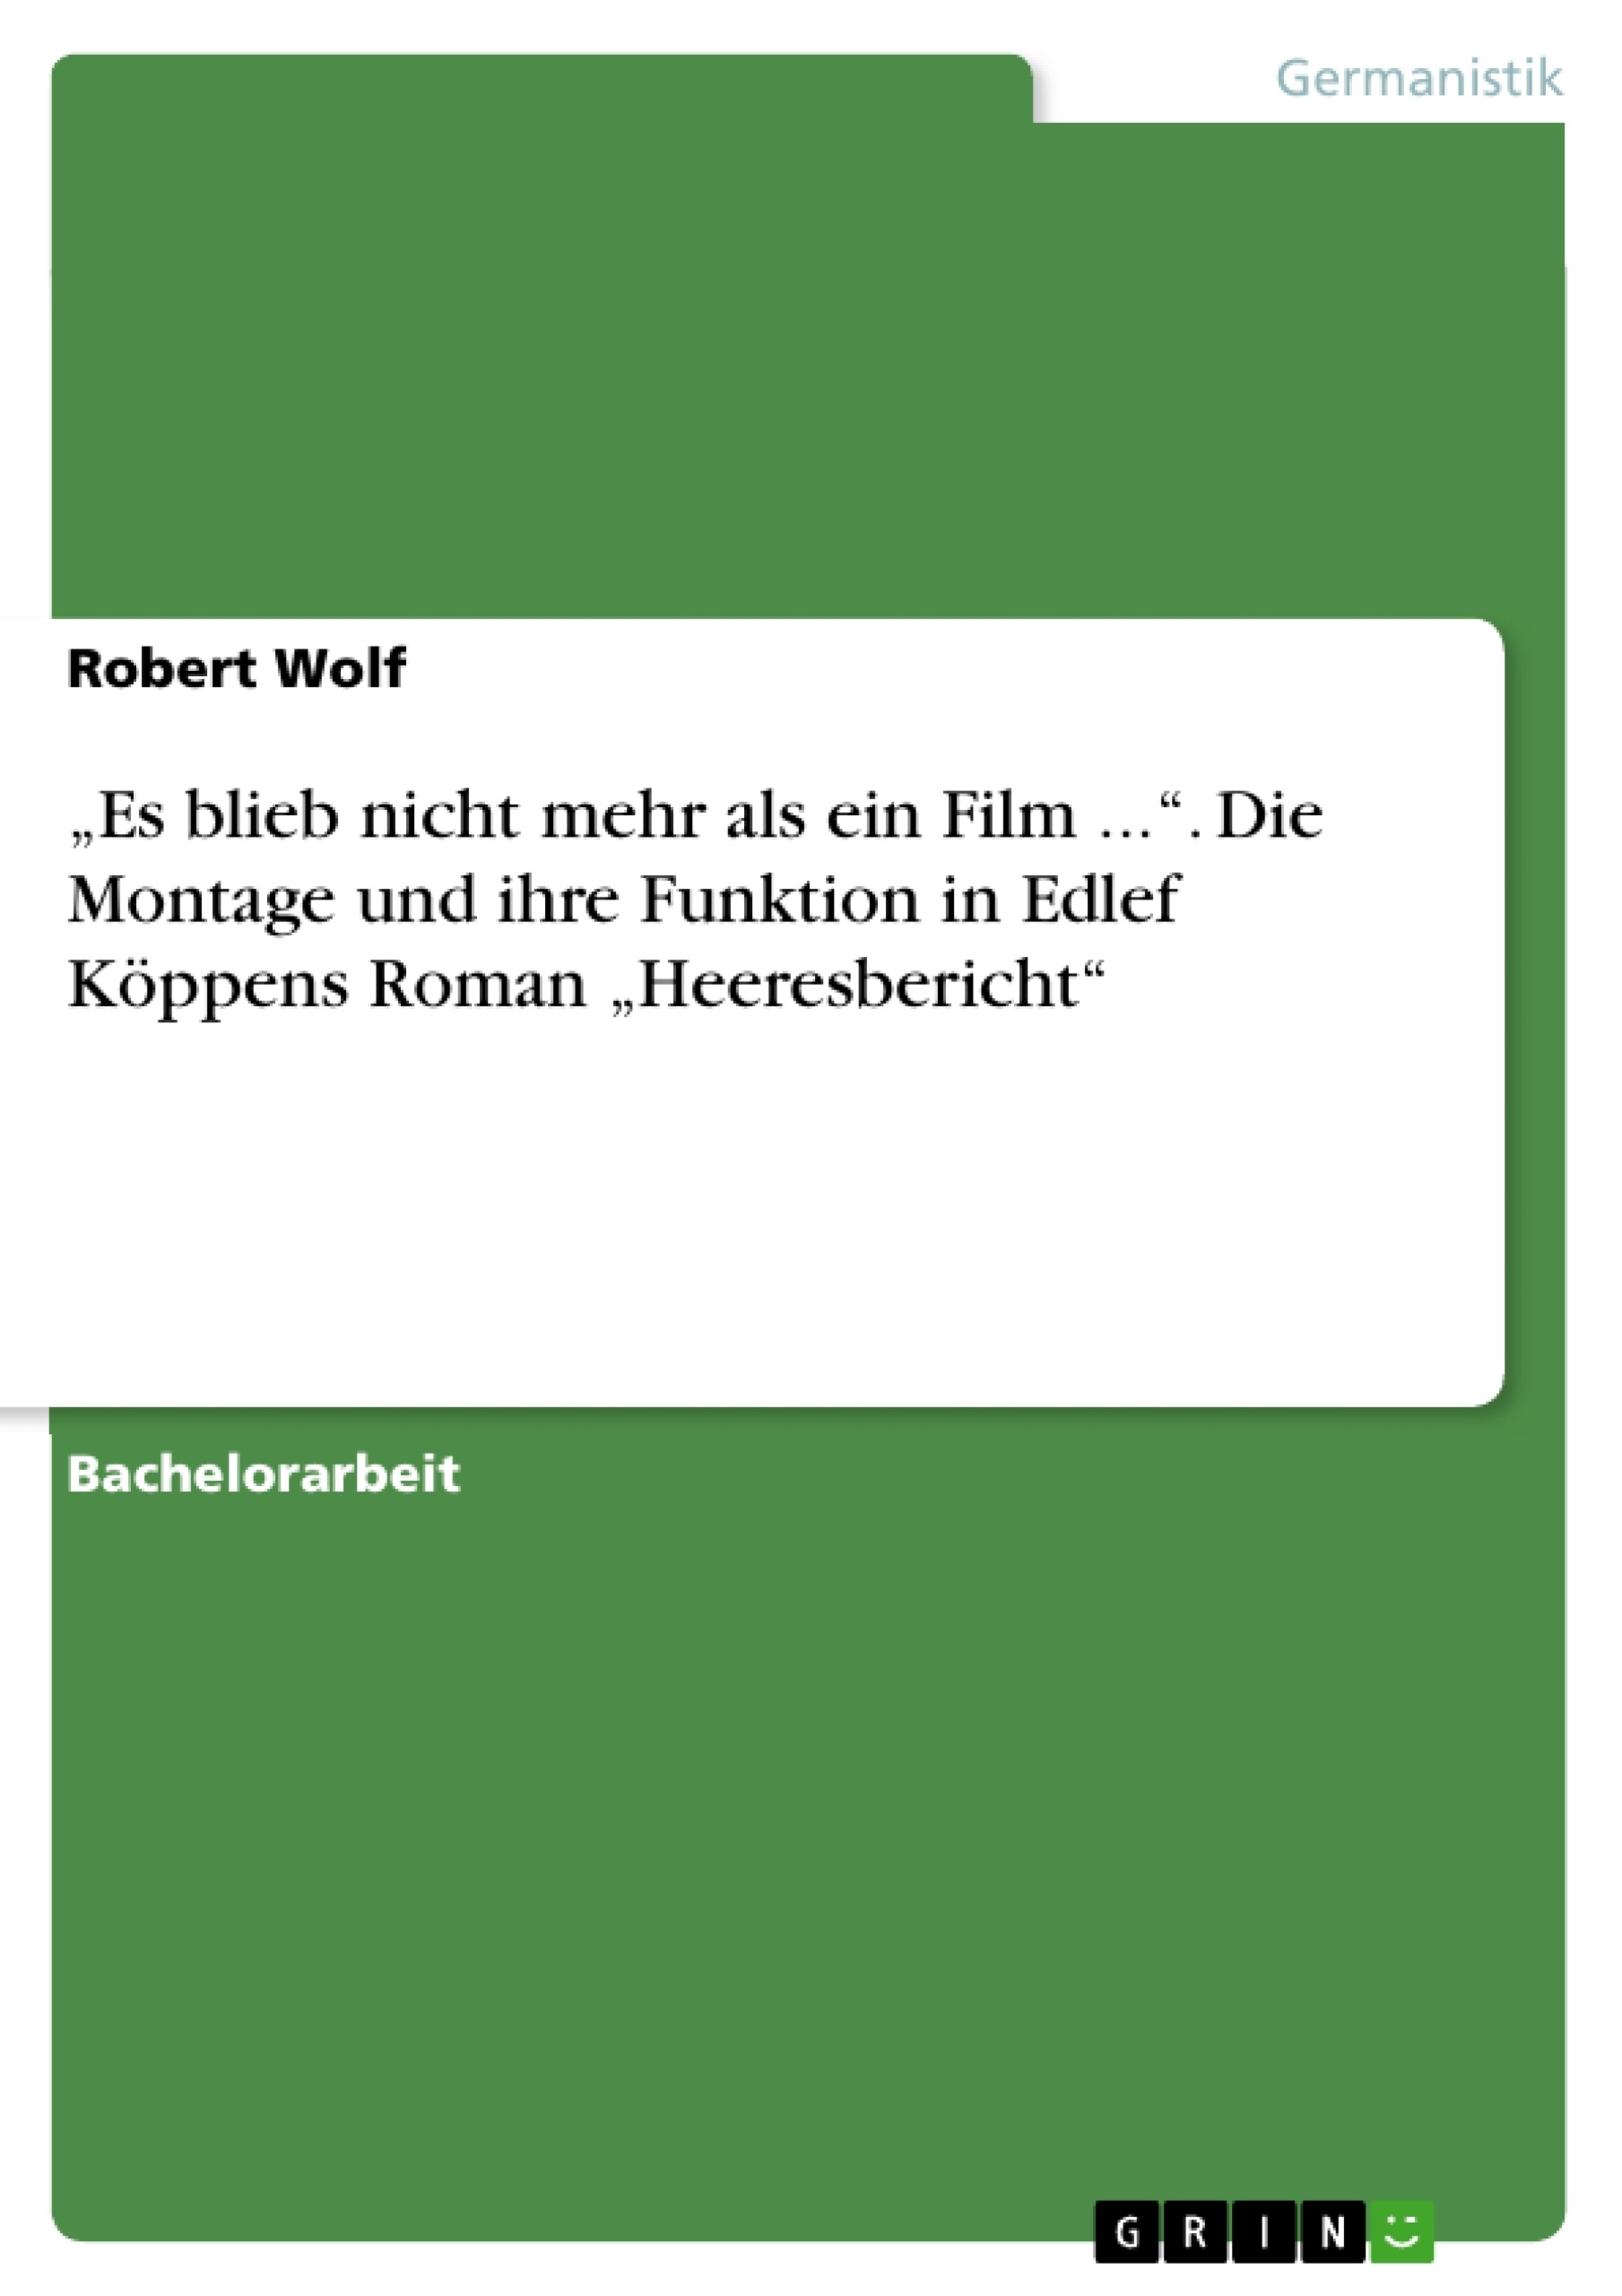 Titre: „Es blieb nicht mehr als ein Film ...“. Die Montage und ihre Funktion in Edlef Köppens Roman „Heeresbericht“